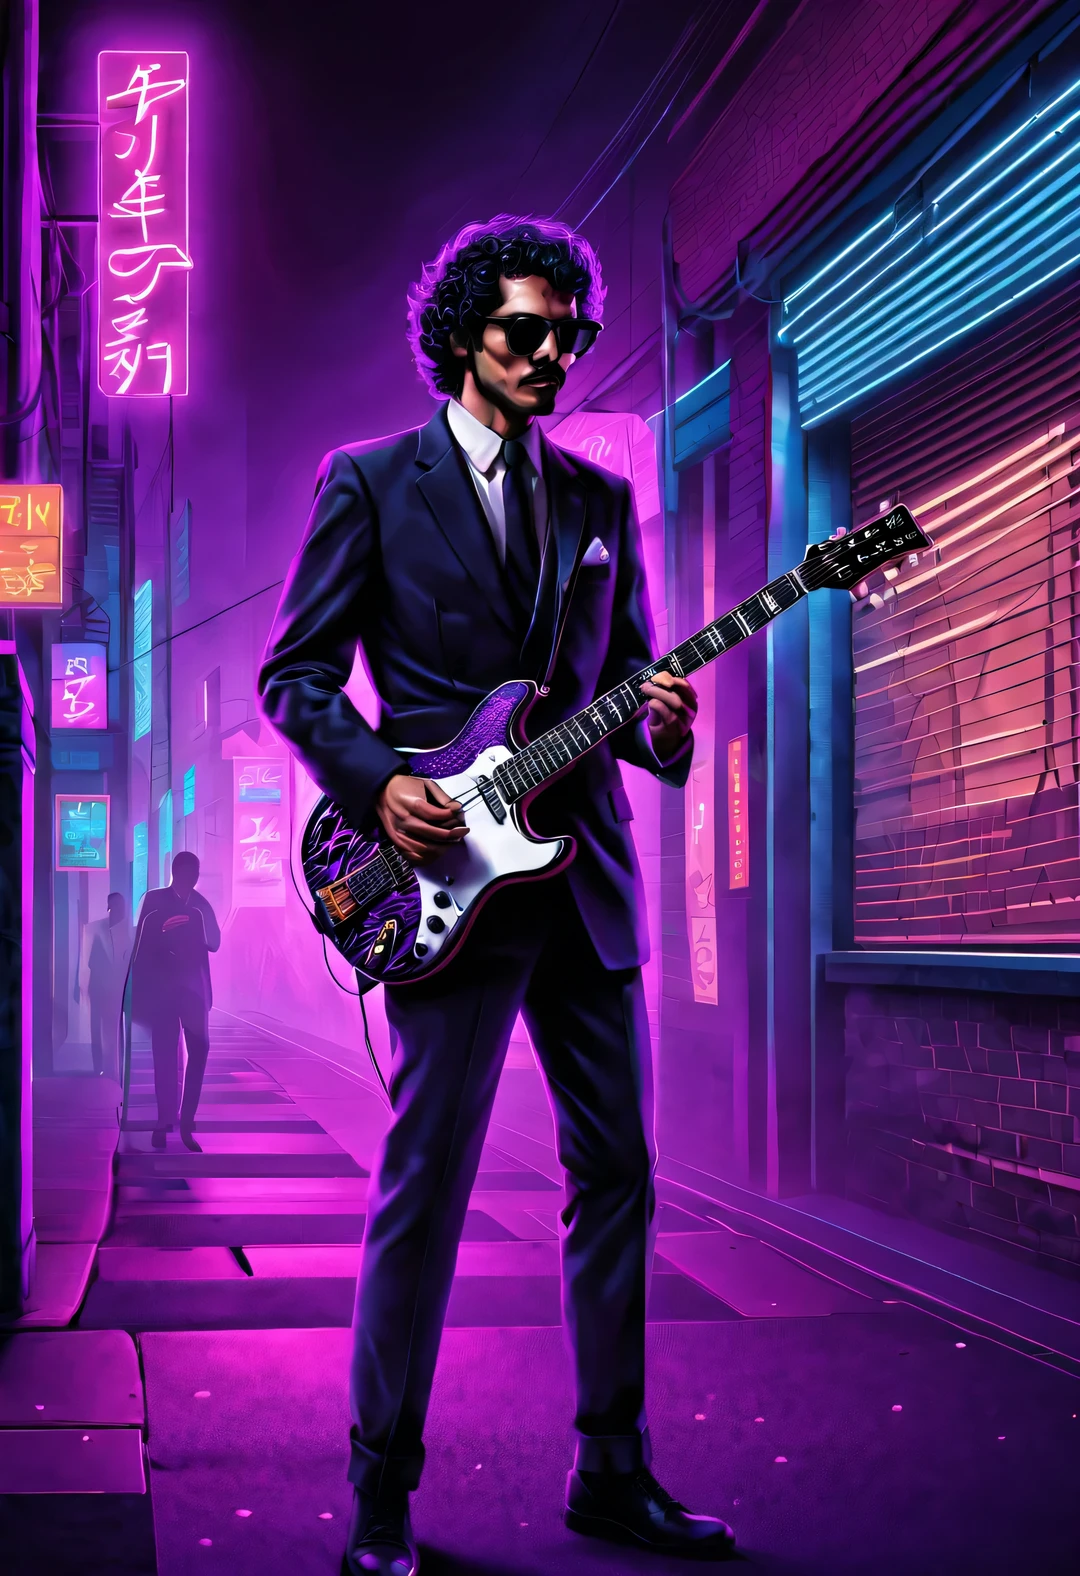 ベクターイラスト, ミニマリズム, 番号, ヴェイパーウェーブスタイル, 美しく細部までこだわったイラスト, もう少し紫色，
1980年代のアメリカのカラス柄の黒いスーツを着た男性、サングラスをかけエレキギターを弾く80年代の男性.,短い黒の巻き毛，背景都市ネオンボードストリートシーン，
 ドラマチックな照明, アートステーションのトレンド, 受賞歴のある, アイコンは非常に詳細です